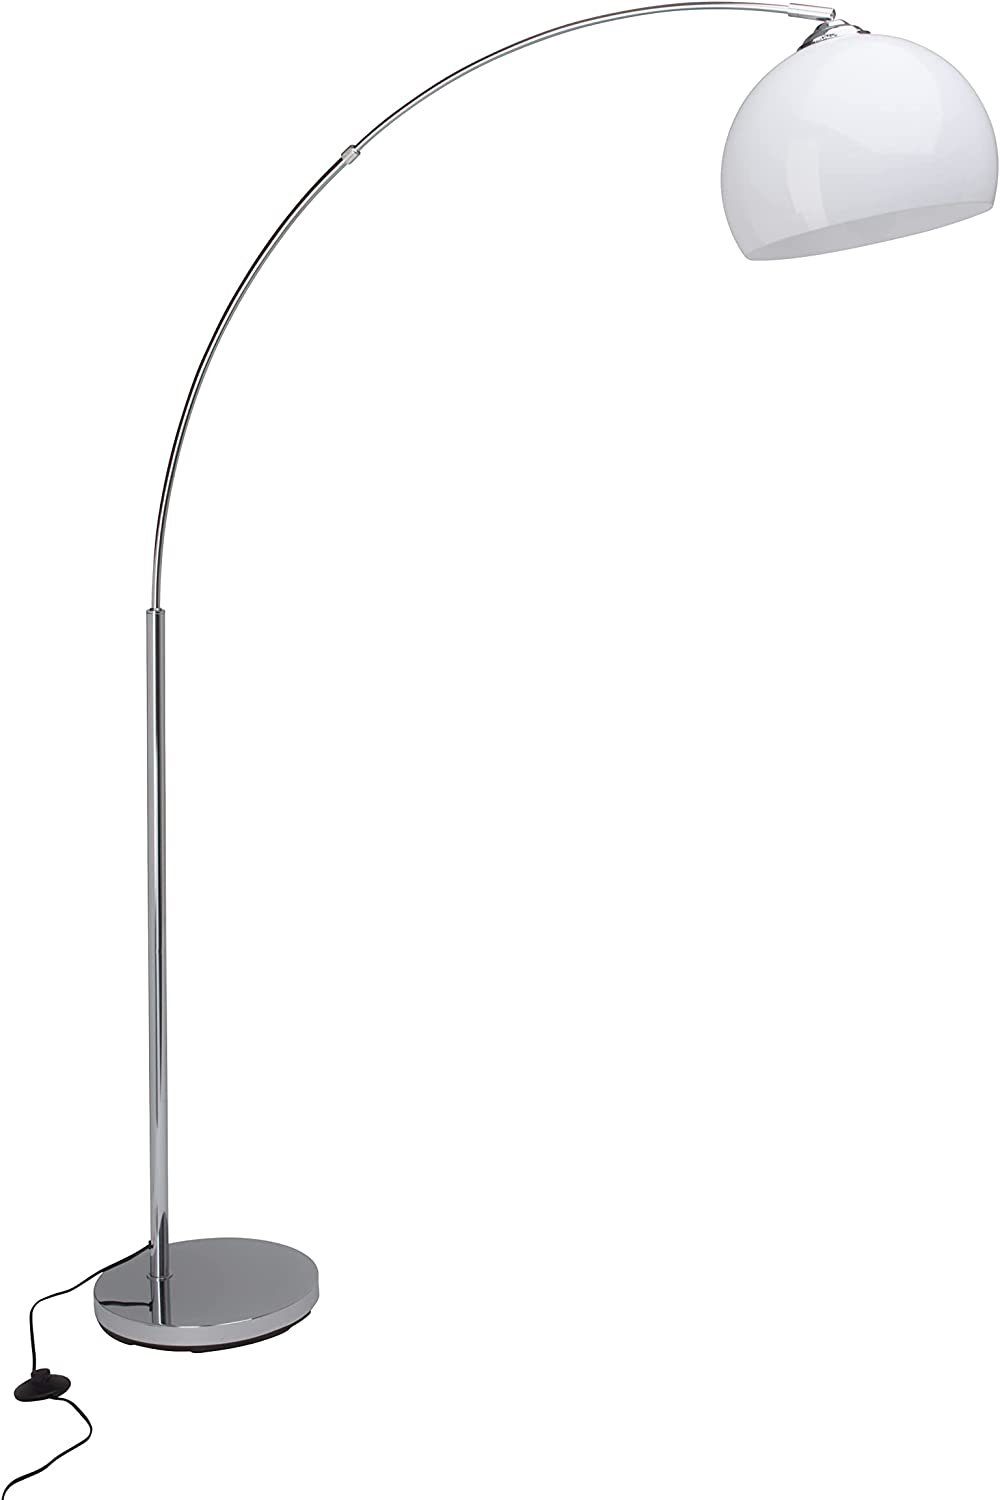 Brilliant Stehlampe Vessa, Vessa ZWEITE Lampe 1,7m WAHL Bogenstandleuchte chrom/weiß